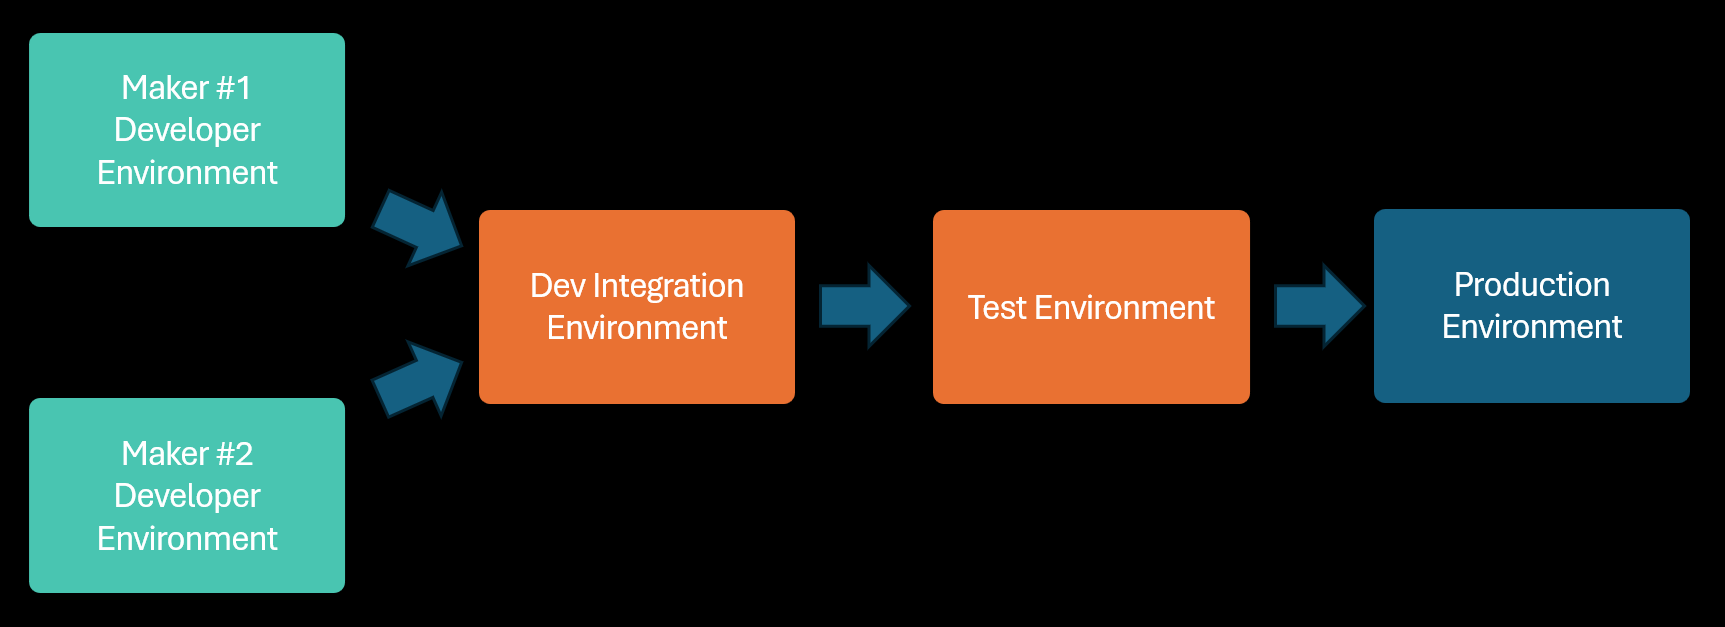 Az egyéni környezetekben fejlesztés alatt álló, megosztott integrációs környezetben kombinált, majd más alkalmazásokkal megosztott környezetekben tesztelt és üzembe helyezett vállalati alkalmazást bemutató diagram